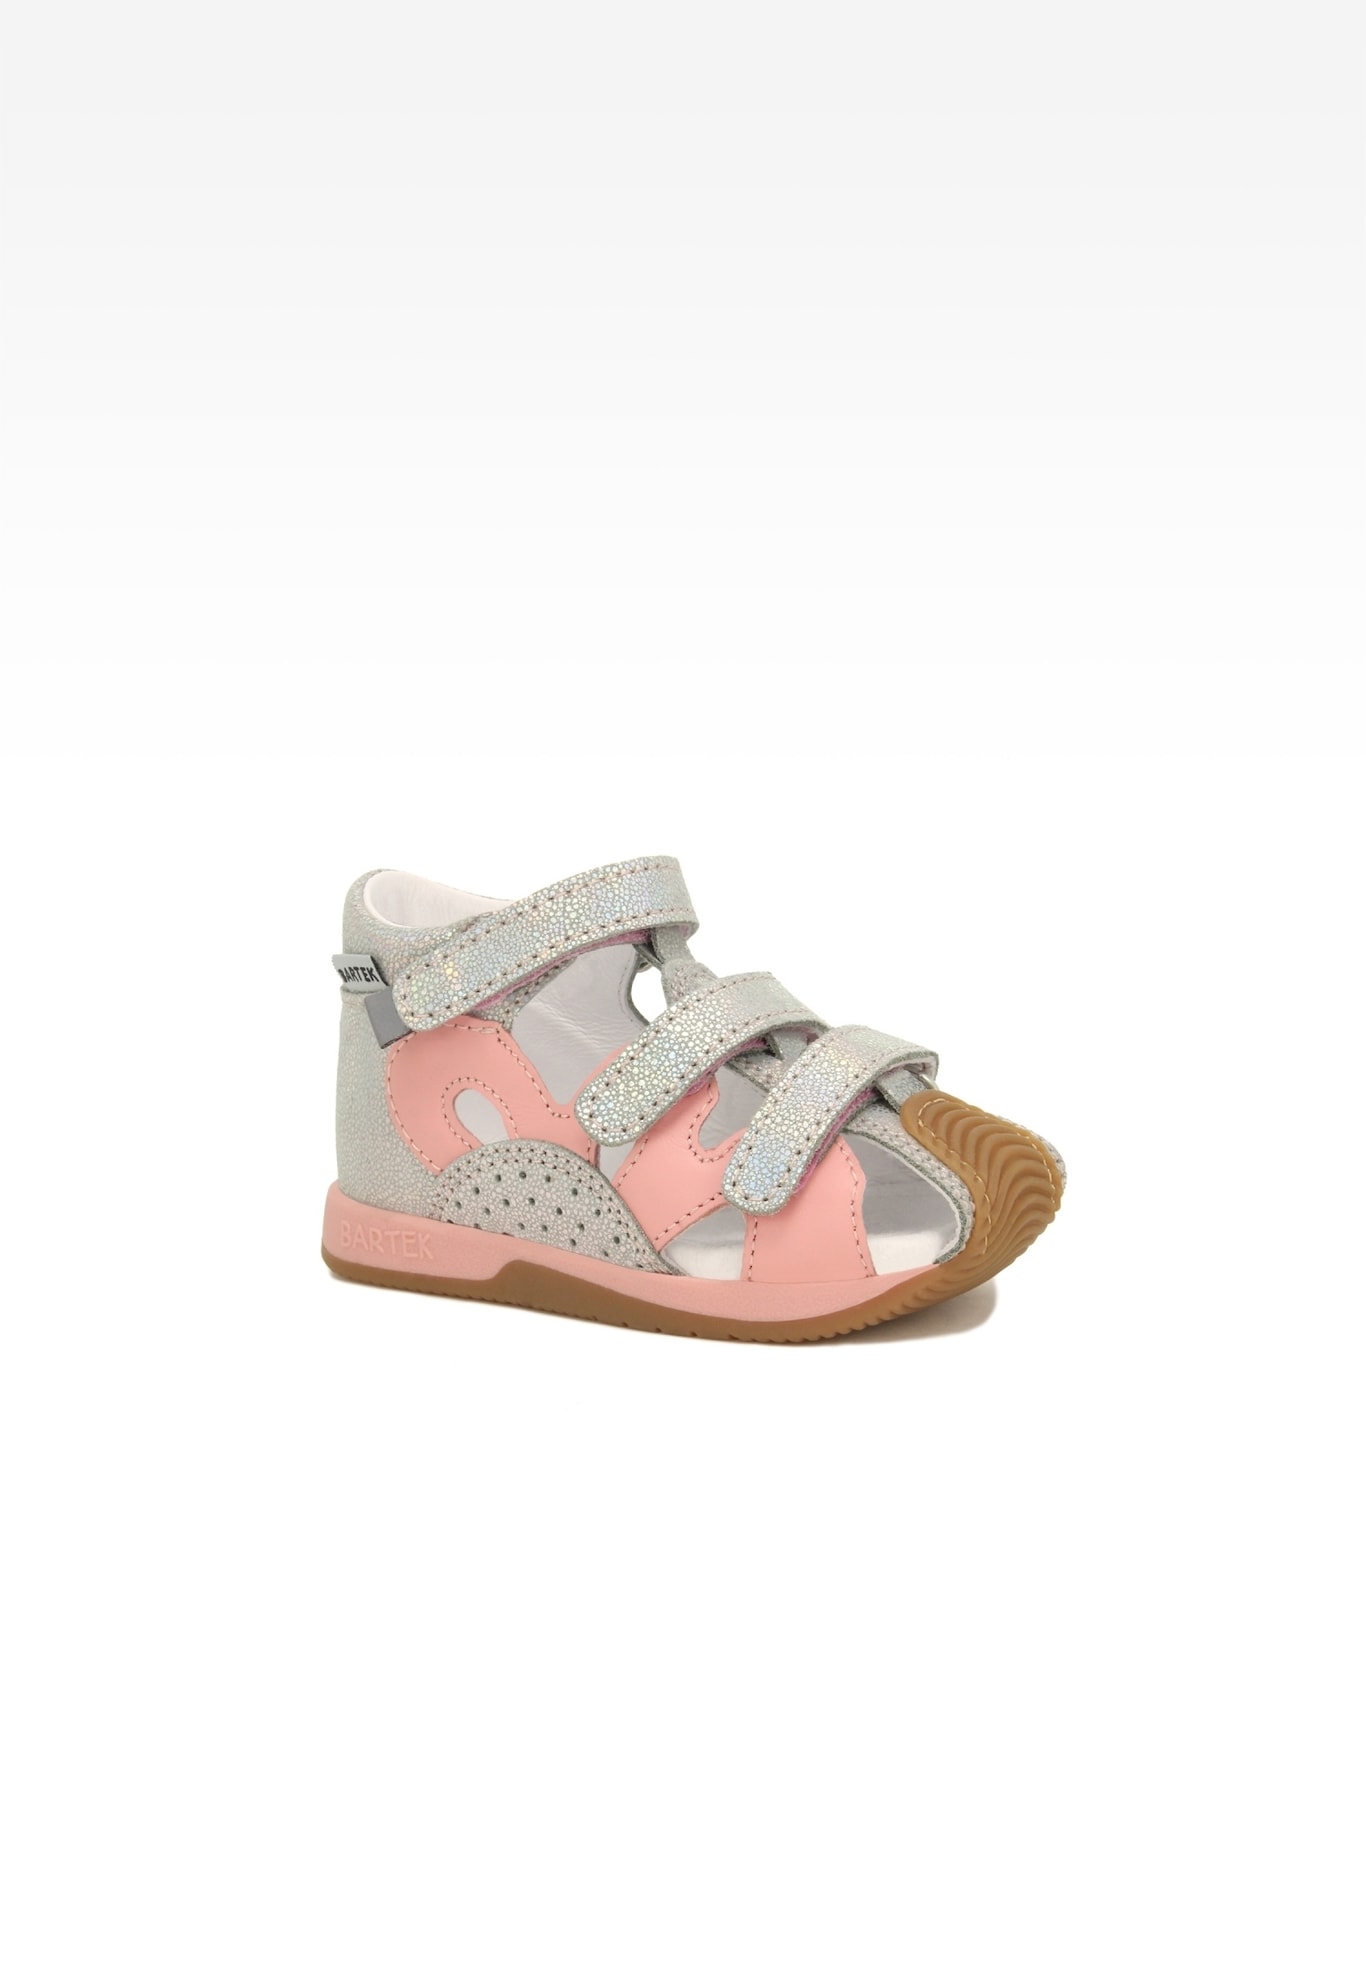 Sandały BARTEK 081021-006 II, dla dziewcząt, różowo-srebrny